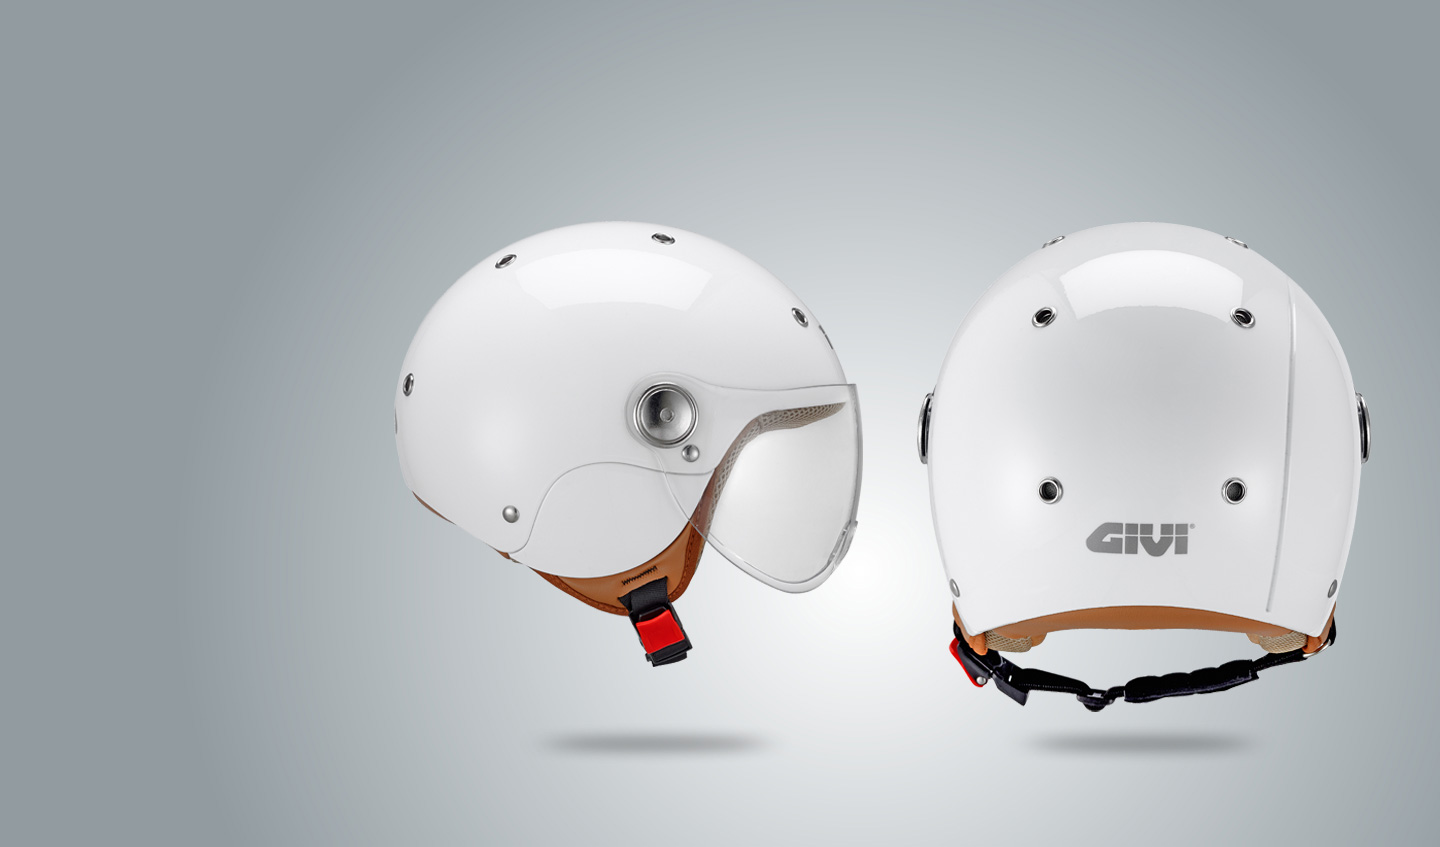 GIVI+launches+the+new+J.03+kids%E2%80%99+helmet